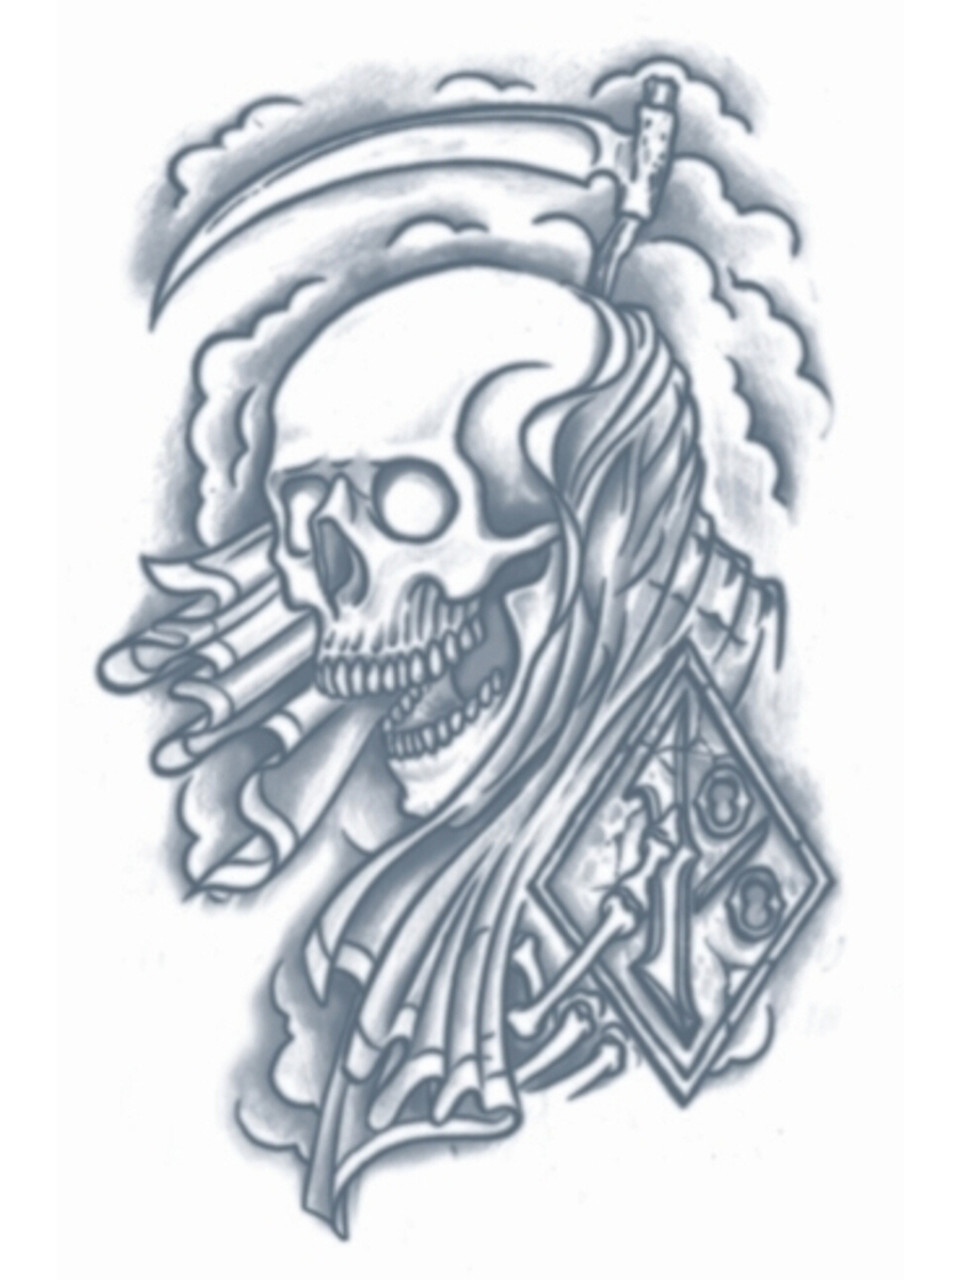 grim reaper tattoo by ajb3art on DeviantArt